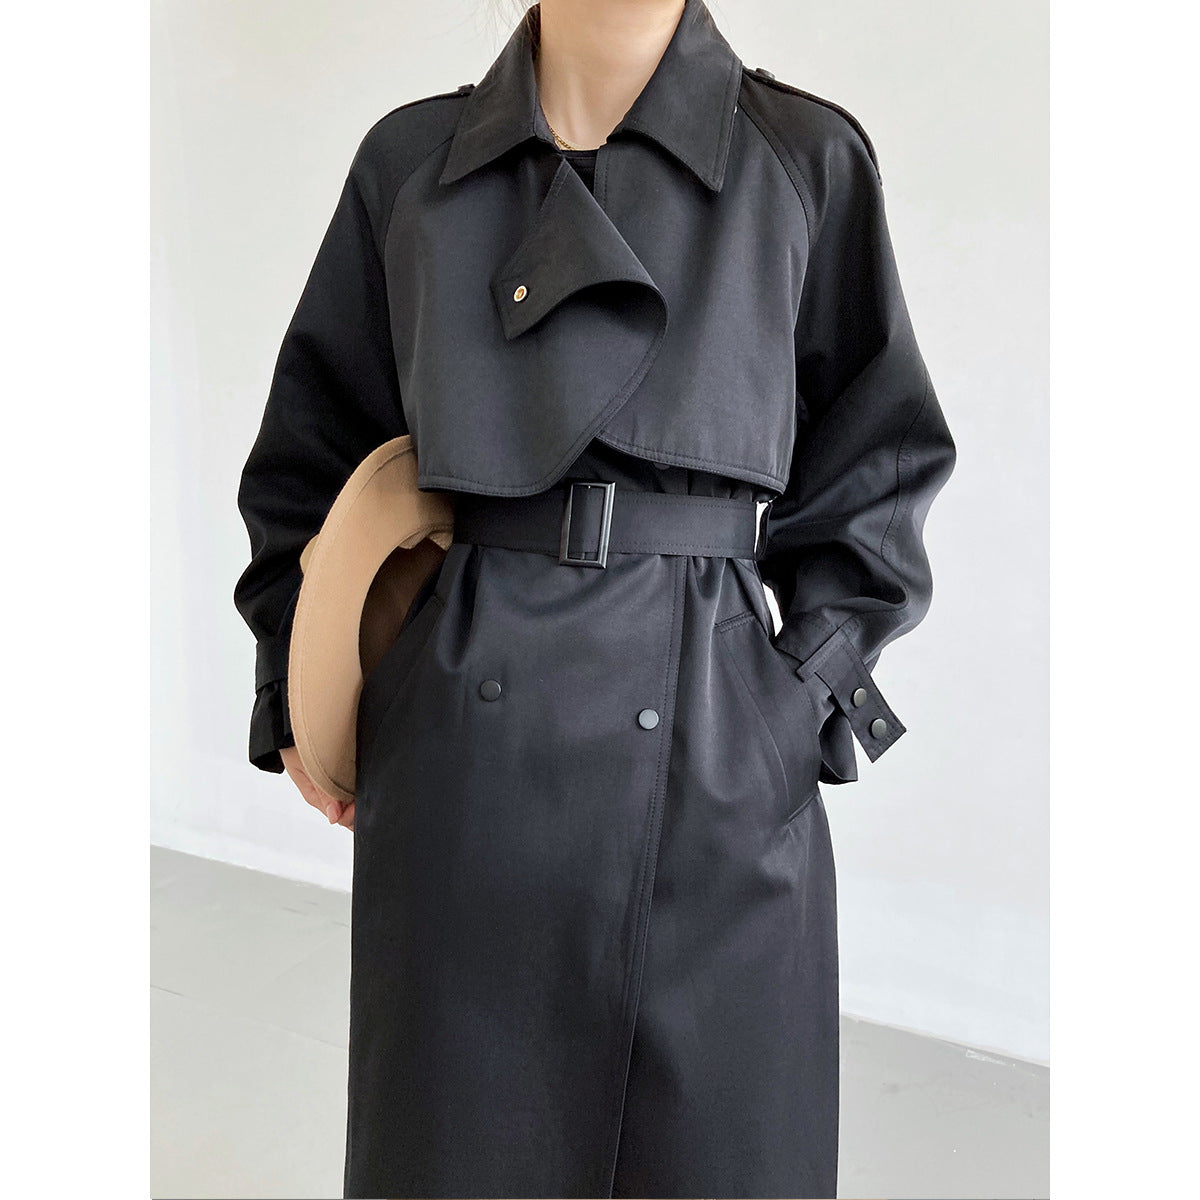 Classy Women Long Wind Break Coats-Outerwear-Black-M-Free Shipping at meselling99